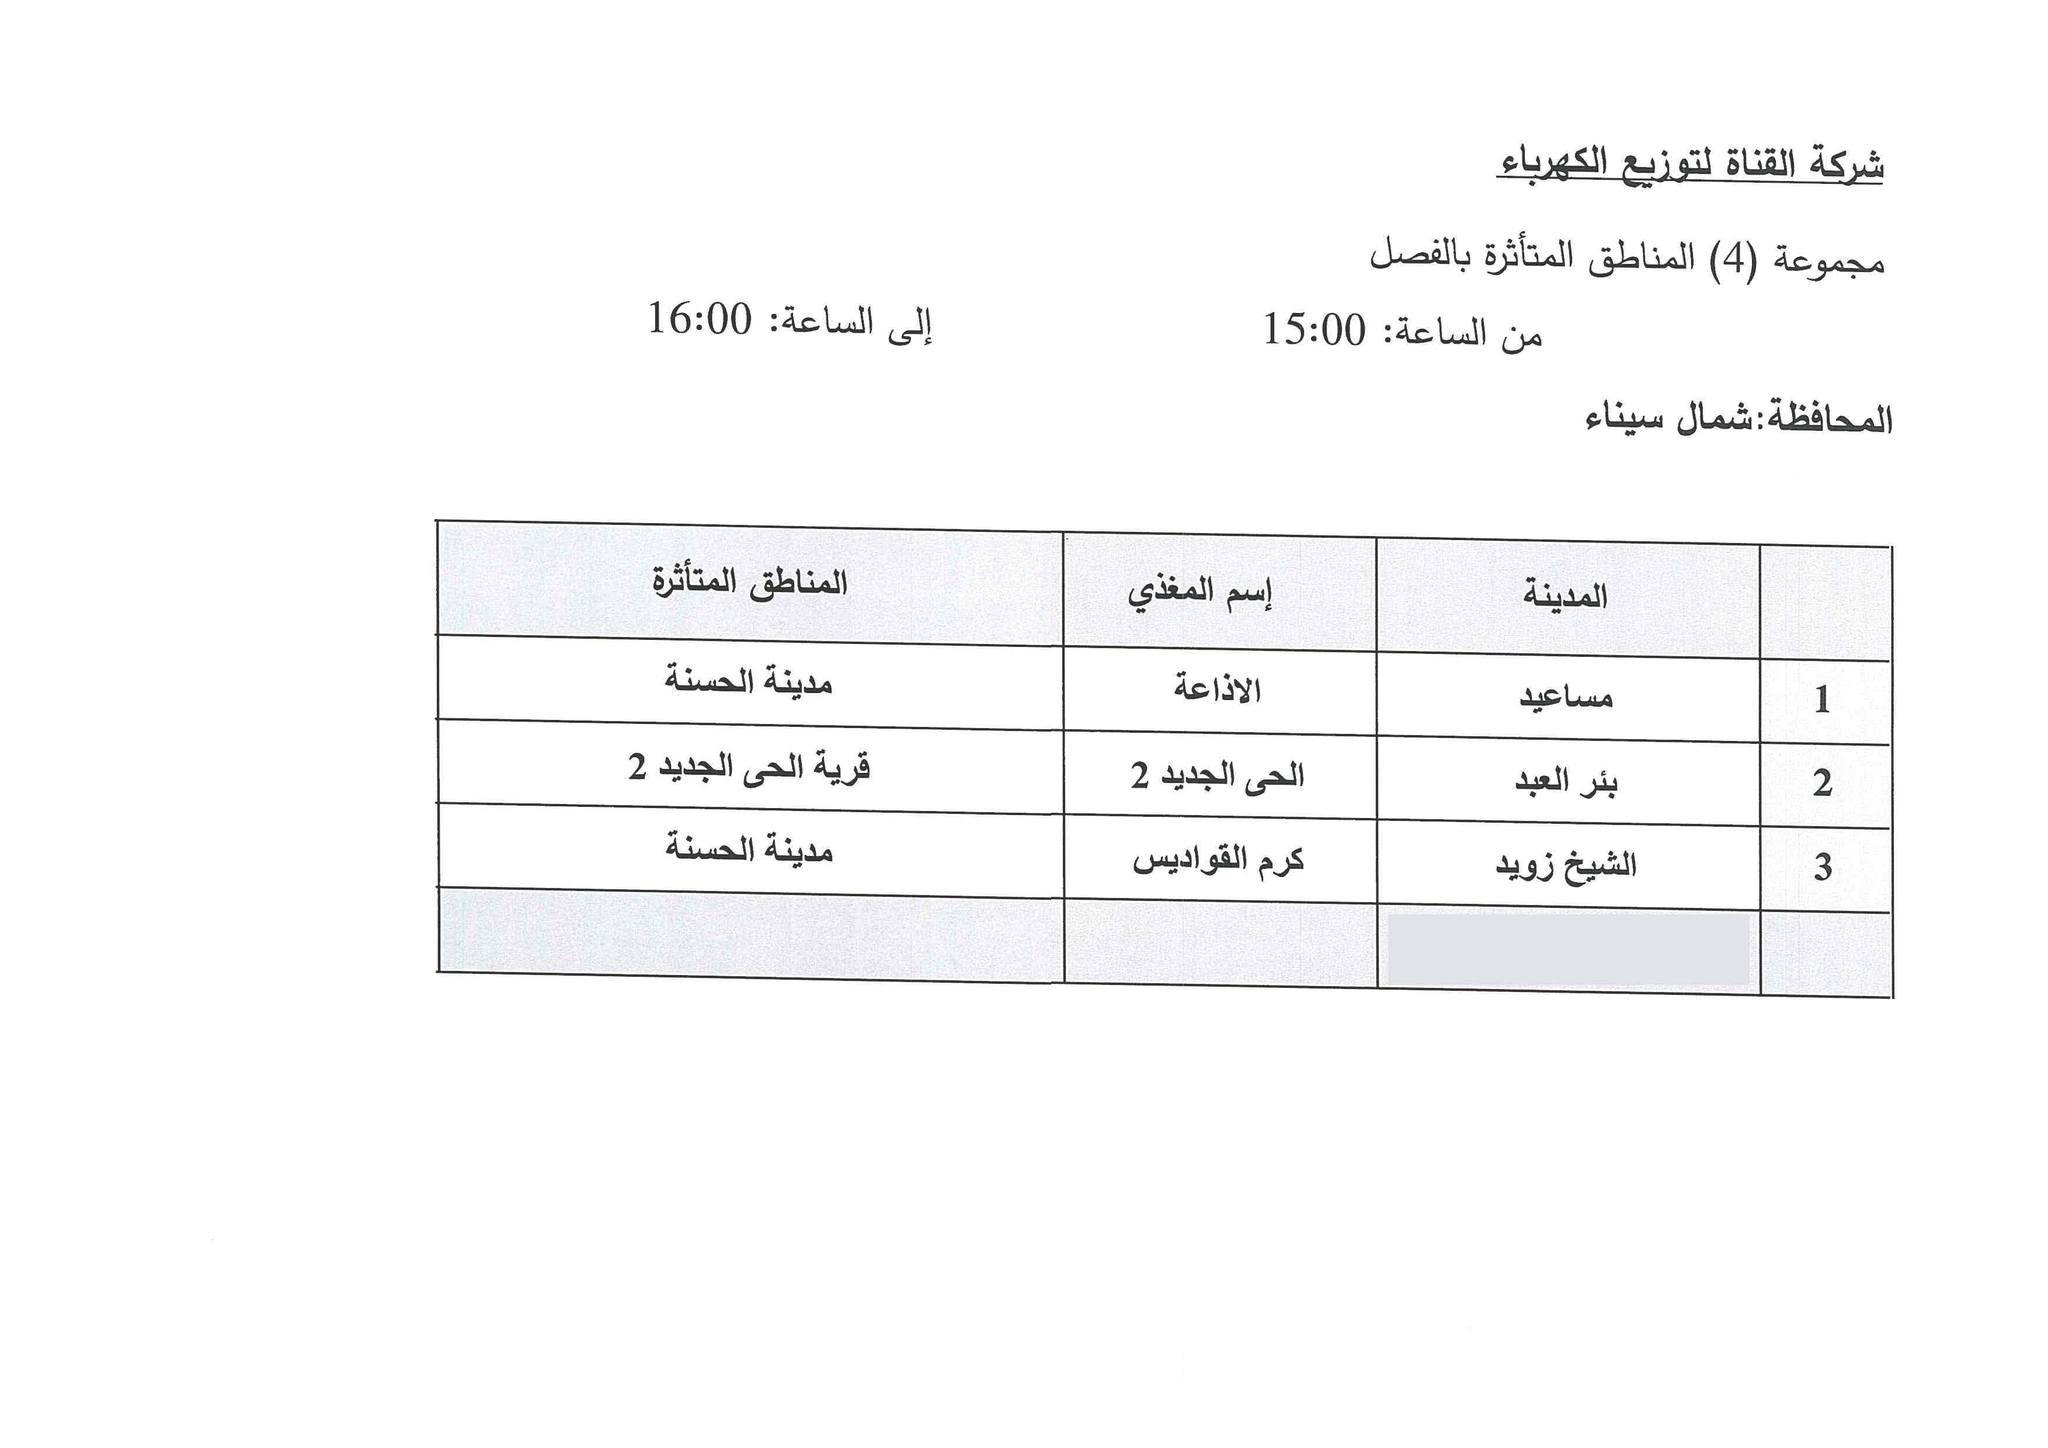 جدول مواعيد تخفيف الأحمال الكهربائية فى محافظة شمال سيناء (4)